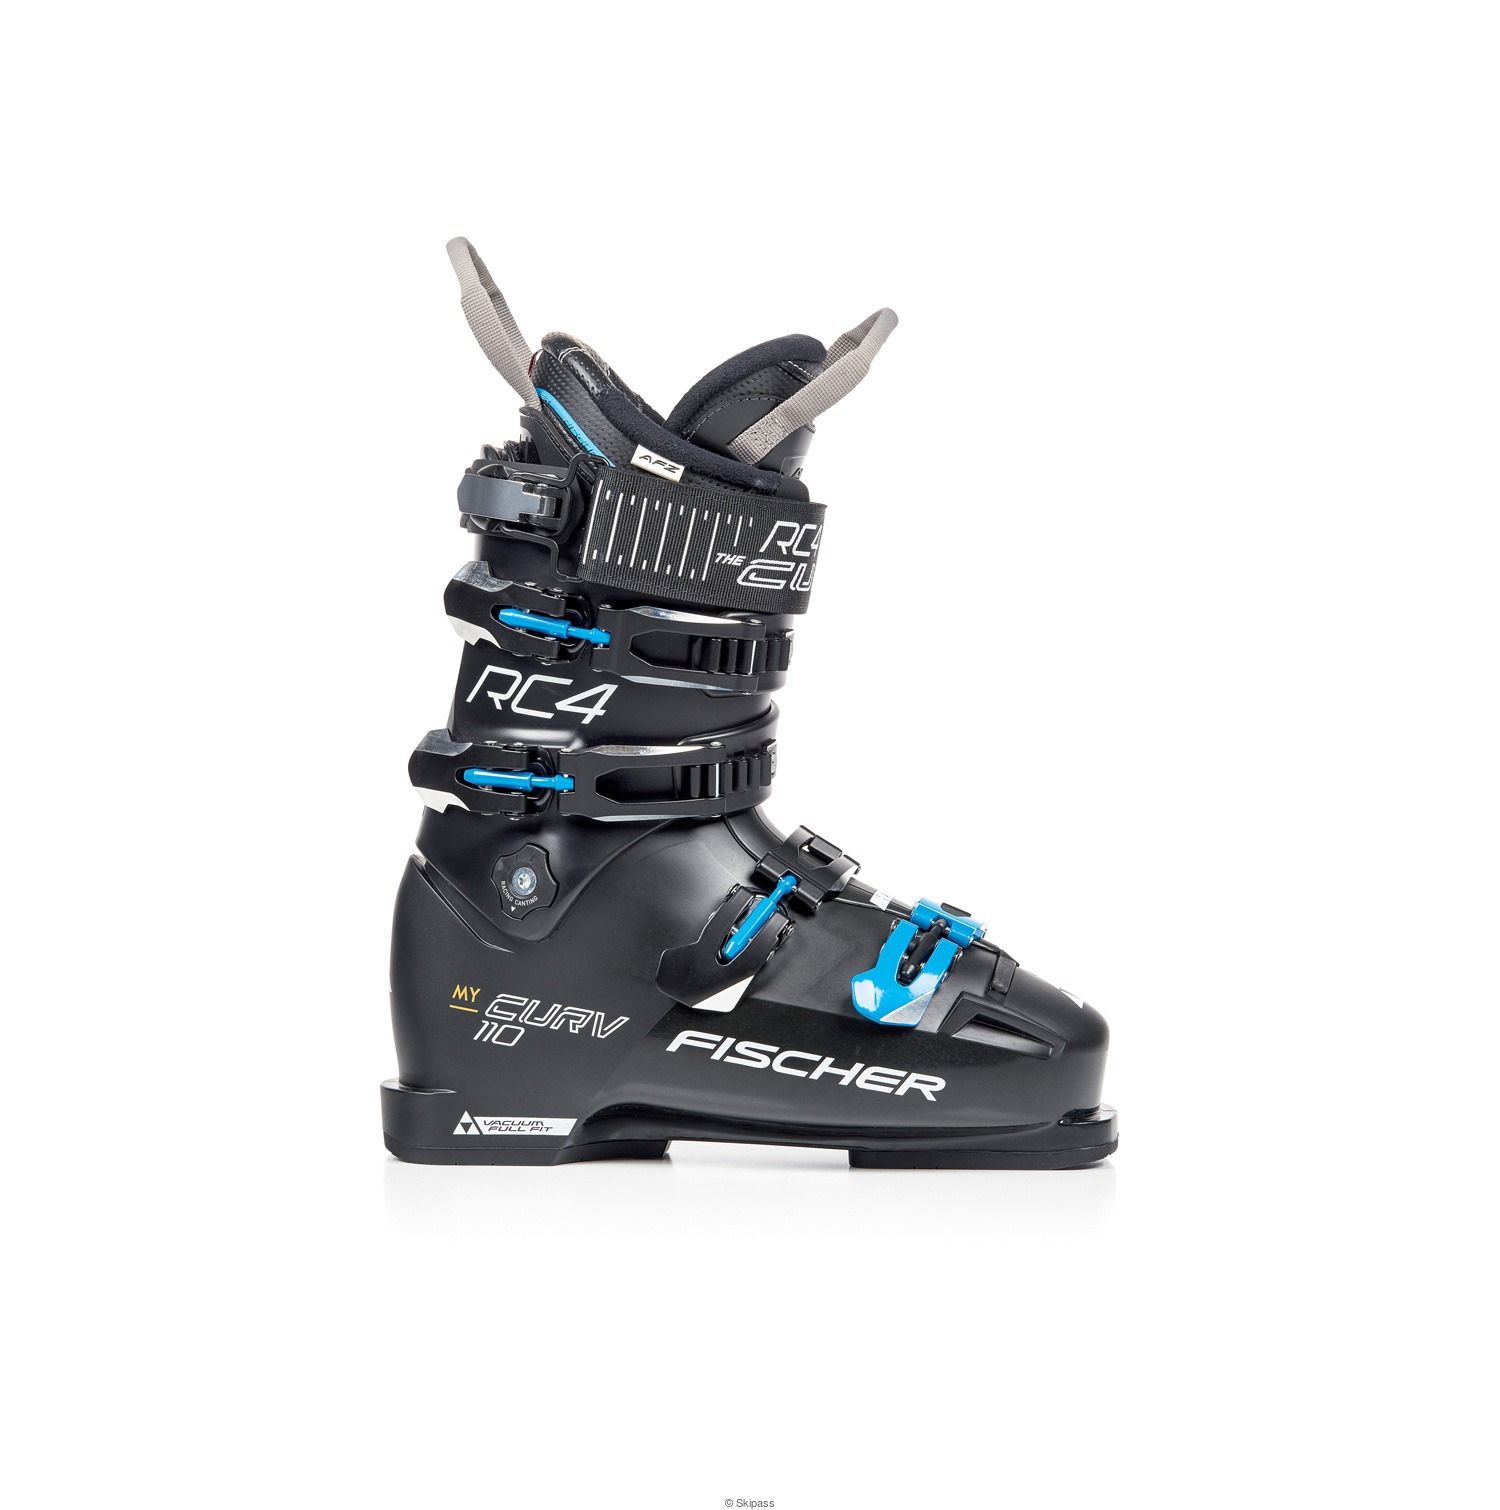 Chaussures de ski My Curv 110 Vacuum Full Fit 2020